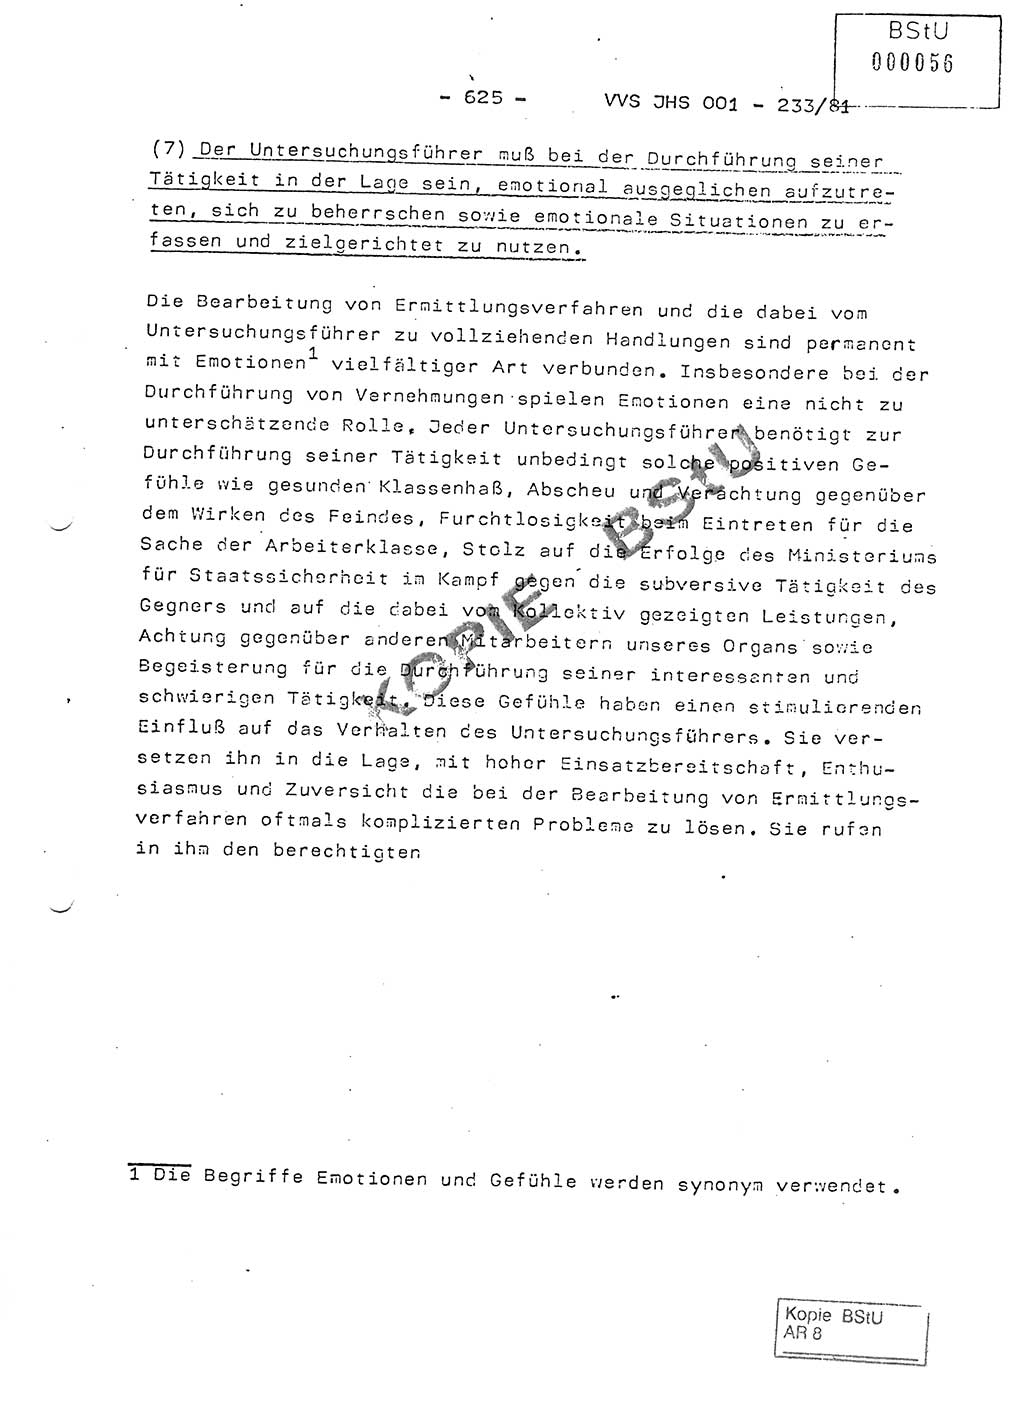 Dissertation Oberstleutnant Horst Zank (JHS), Oberstleutnant Dr. Karl-Heinz Knoblauch (JHS), Oberstleutnant Gustav-Adolf Kowalewski (HA Ⅸ), Oberstleutnant Wolfgang Plötner (HA Ⅸ), Ministerium für Staatssicherheit (MfS) [Deutsche Demokratische Republik (DDR)], Juristische Hochschule (JHS), Vertrauliche Verschlußsache (VVS) o001-233/81, Potsdam 1981, Blatt 625 (Diss. MfS DDR JHS VVS o001-233/81 1981, Bl. 625)